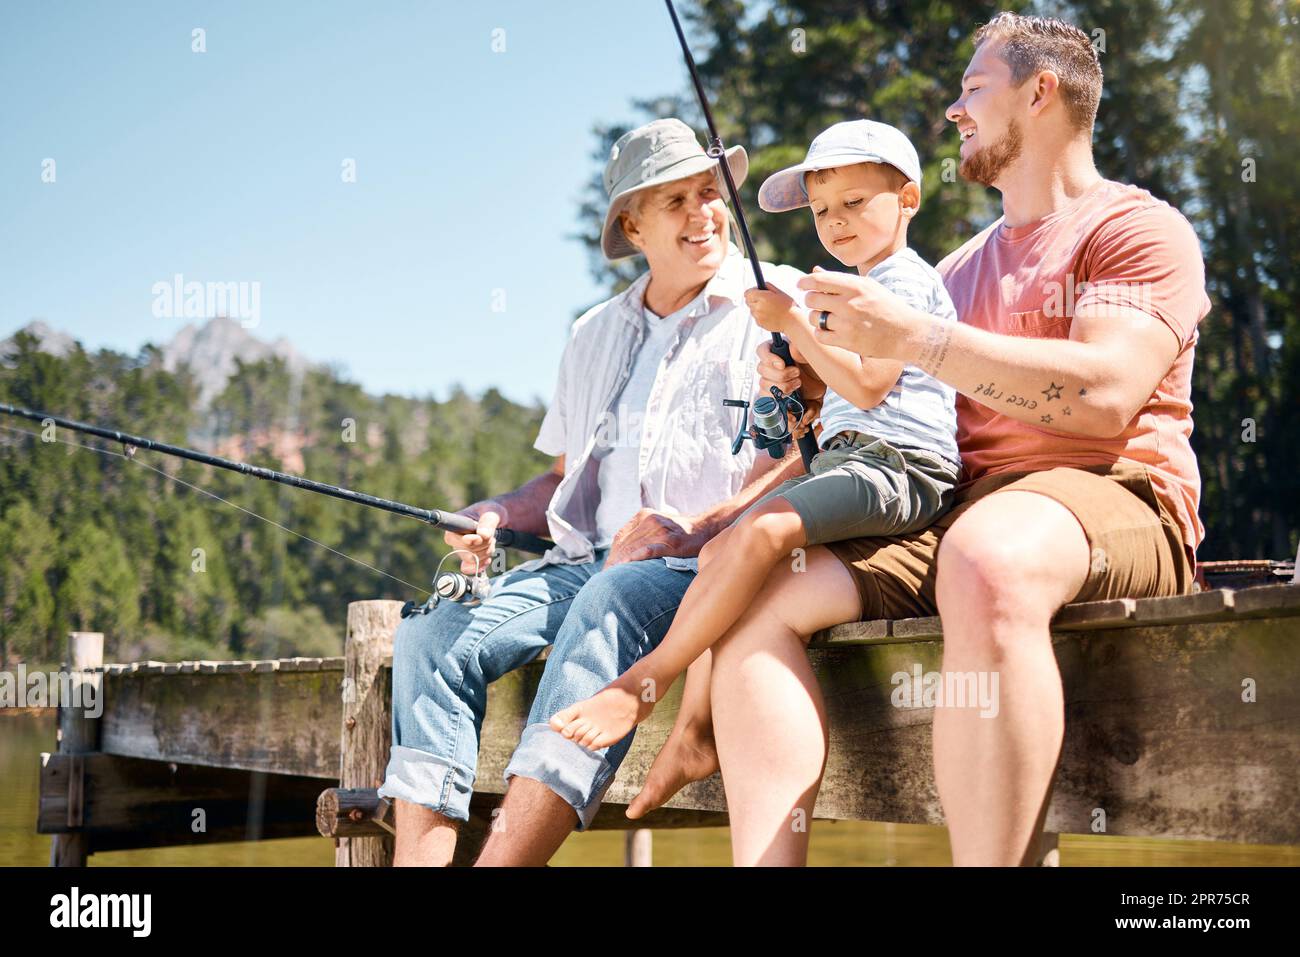 Les garçons voulaient passer du temps de qualité ensemble. Photo d'un petit garçon pêchant avec son père et son grand-père à un lac dans une forêt. Banque D'Images